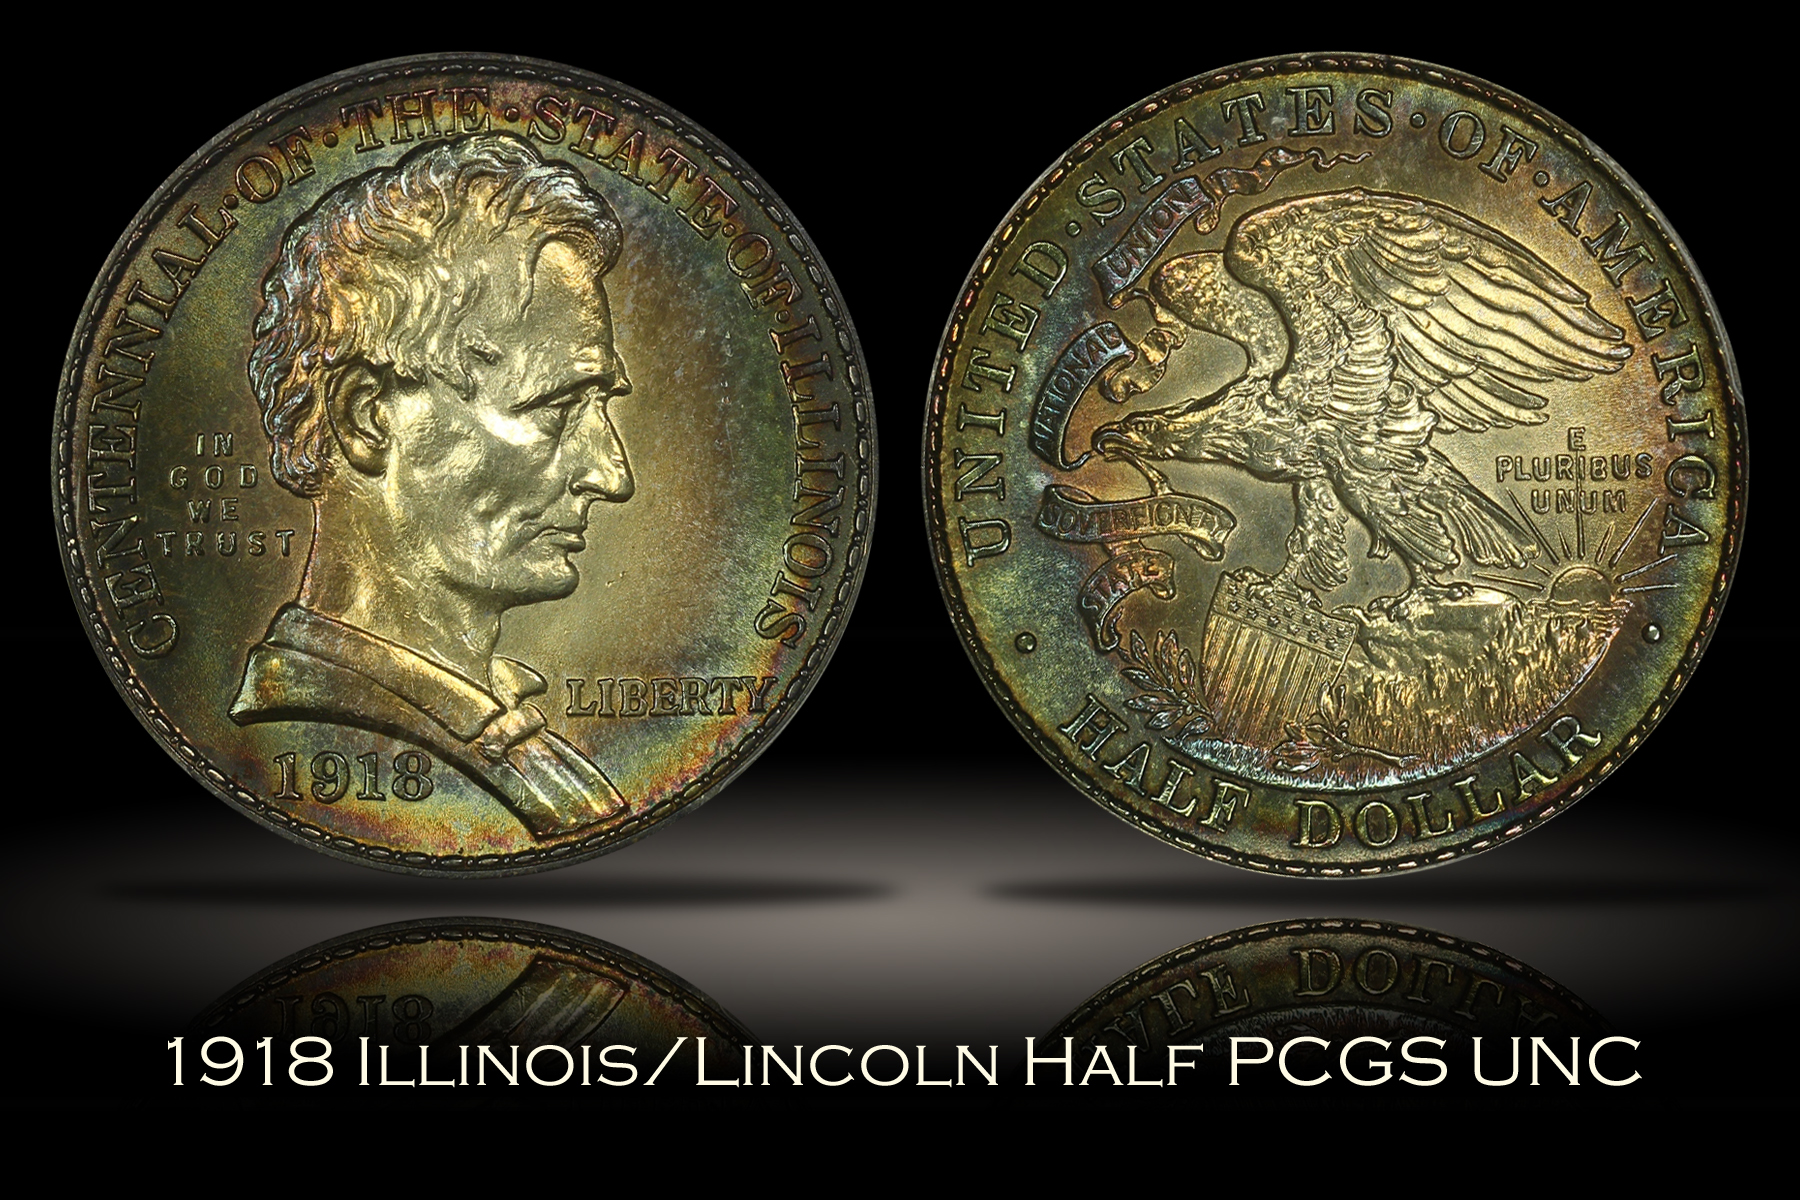 1918 Illinois/Lincoln Half PCGS UNC Details